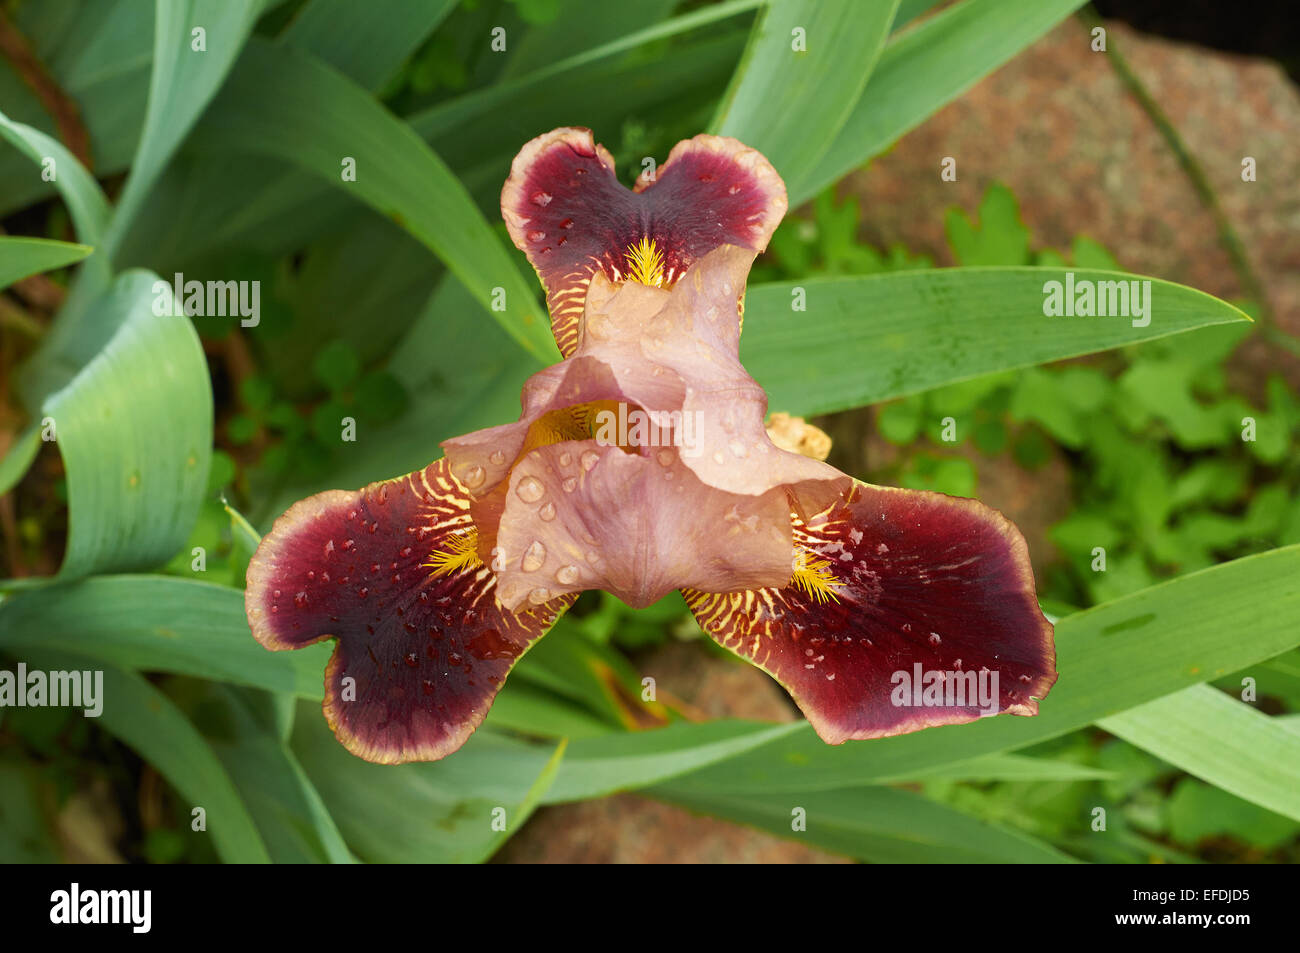 top view of burgundy iris flower growing in the garden Stock Photo